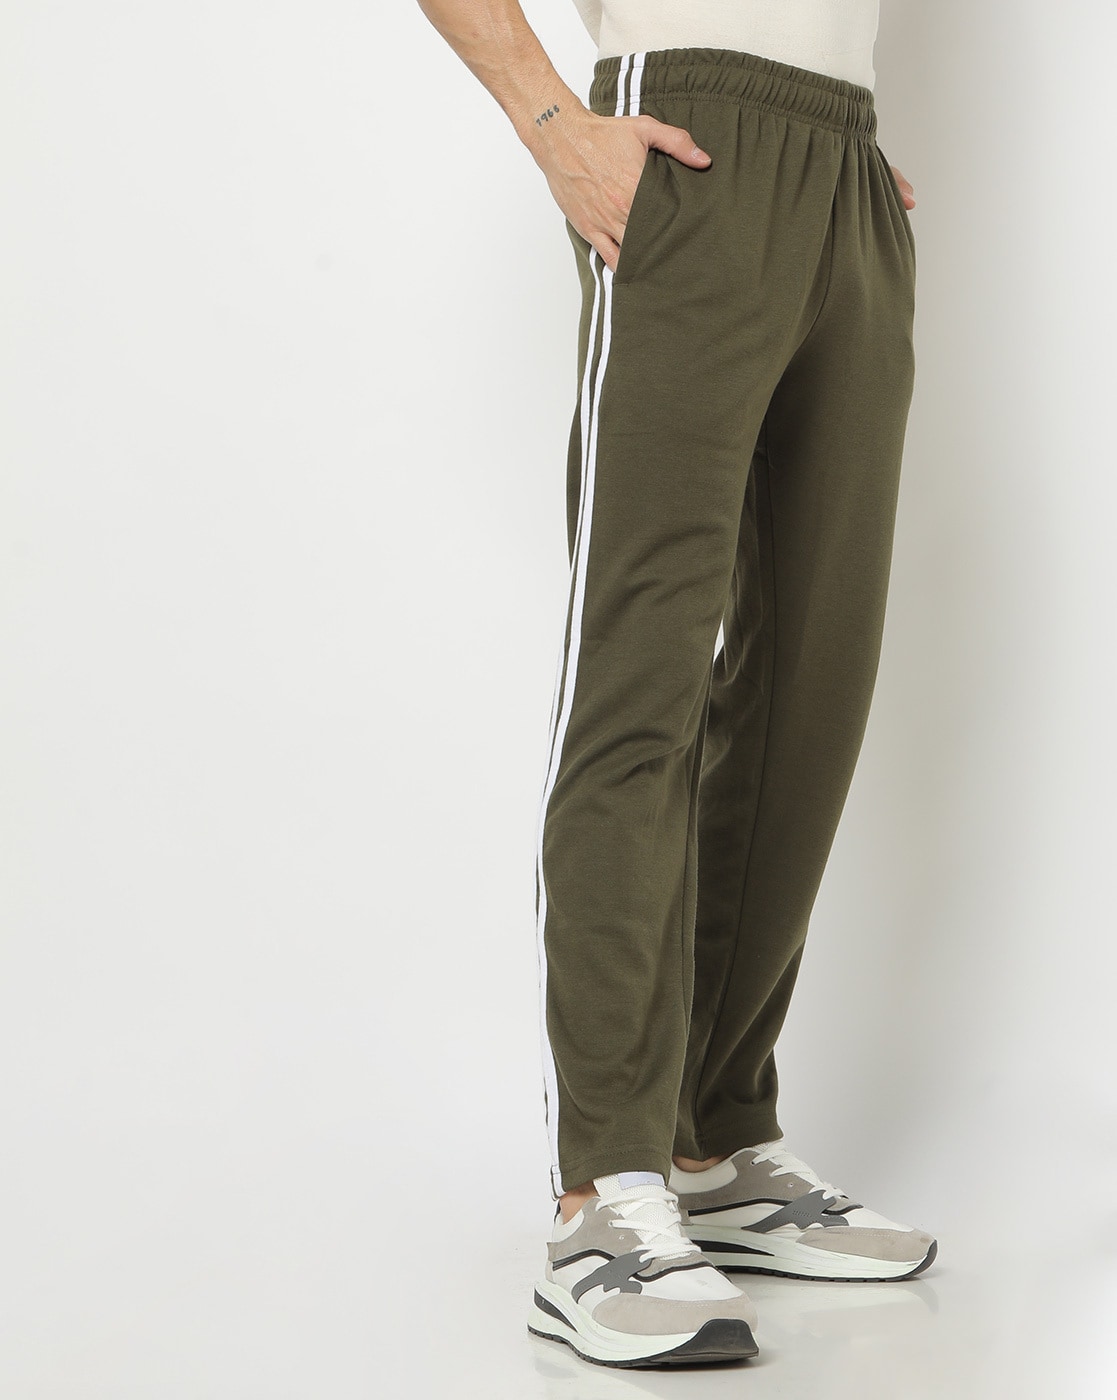 Buy Olive Green Track Pants for Men by Teamspirit Online  Ajiocom